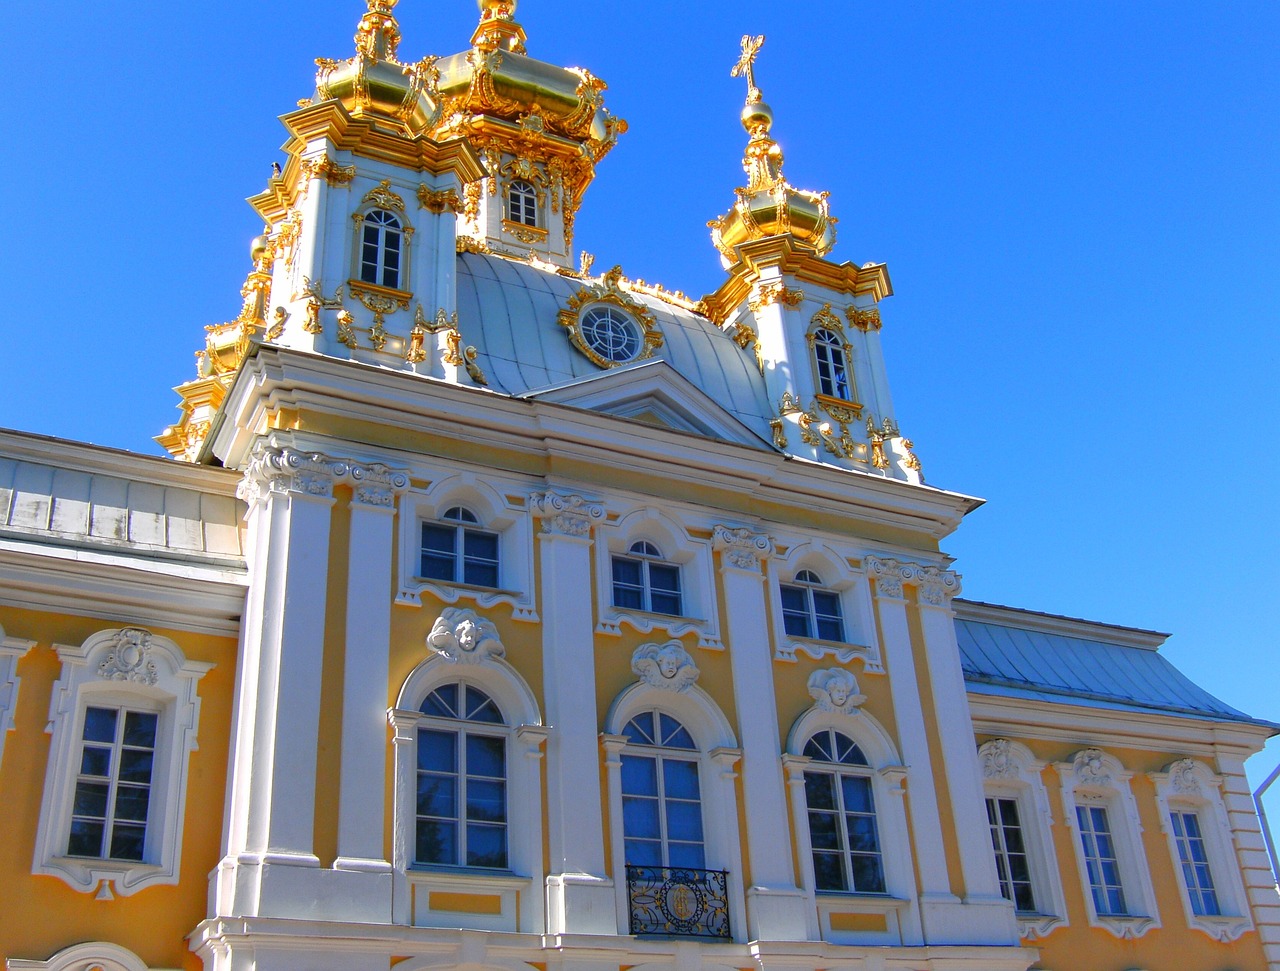 San Petersburg'un Sanat Dolu Gezisi: Hermitage Müzesi ve Peterhof Sarayı'nı Keşfedin